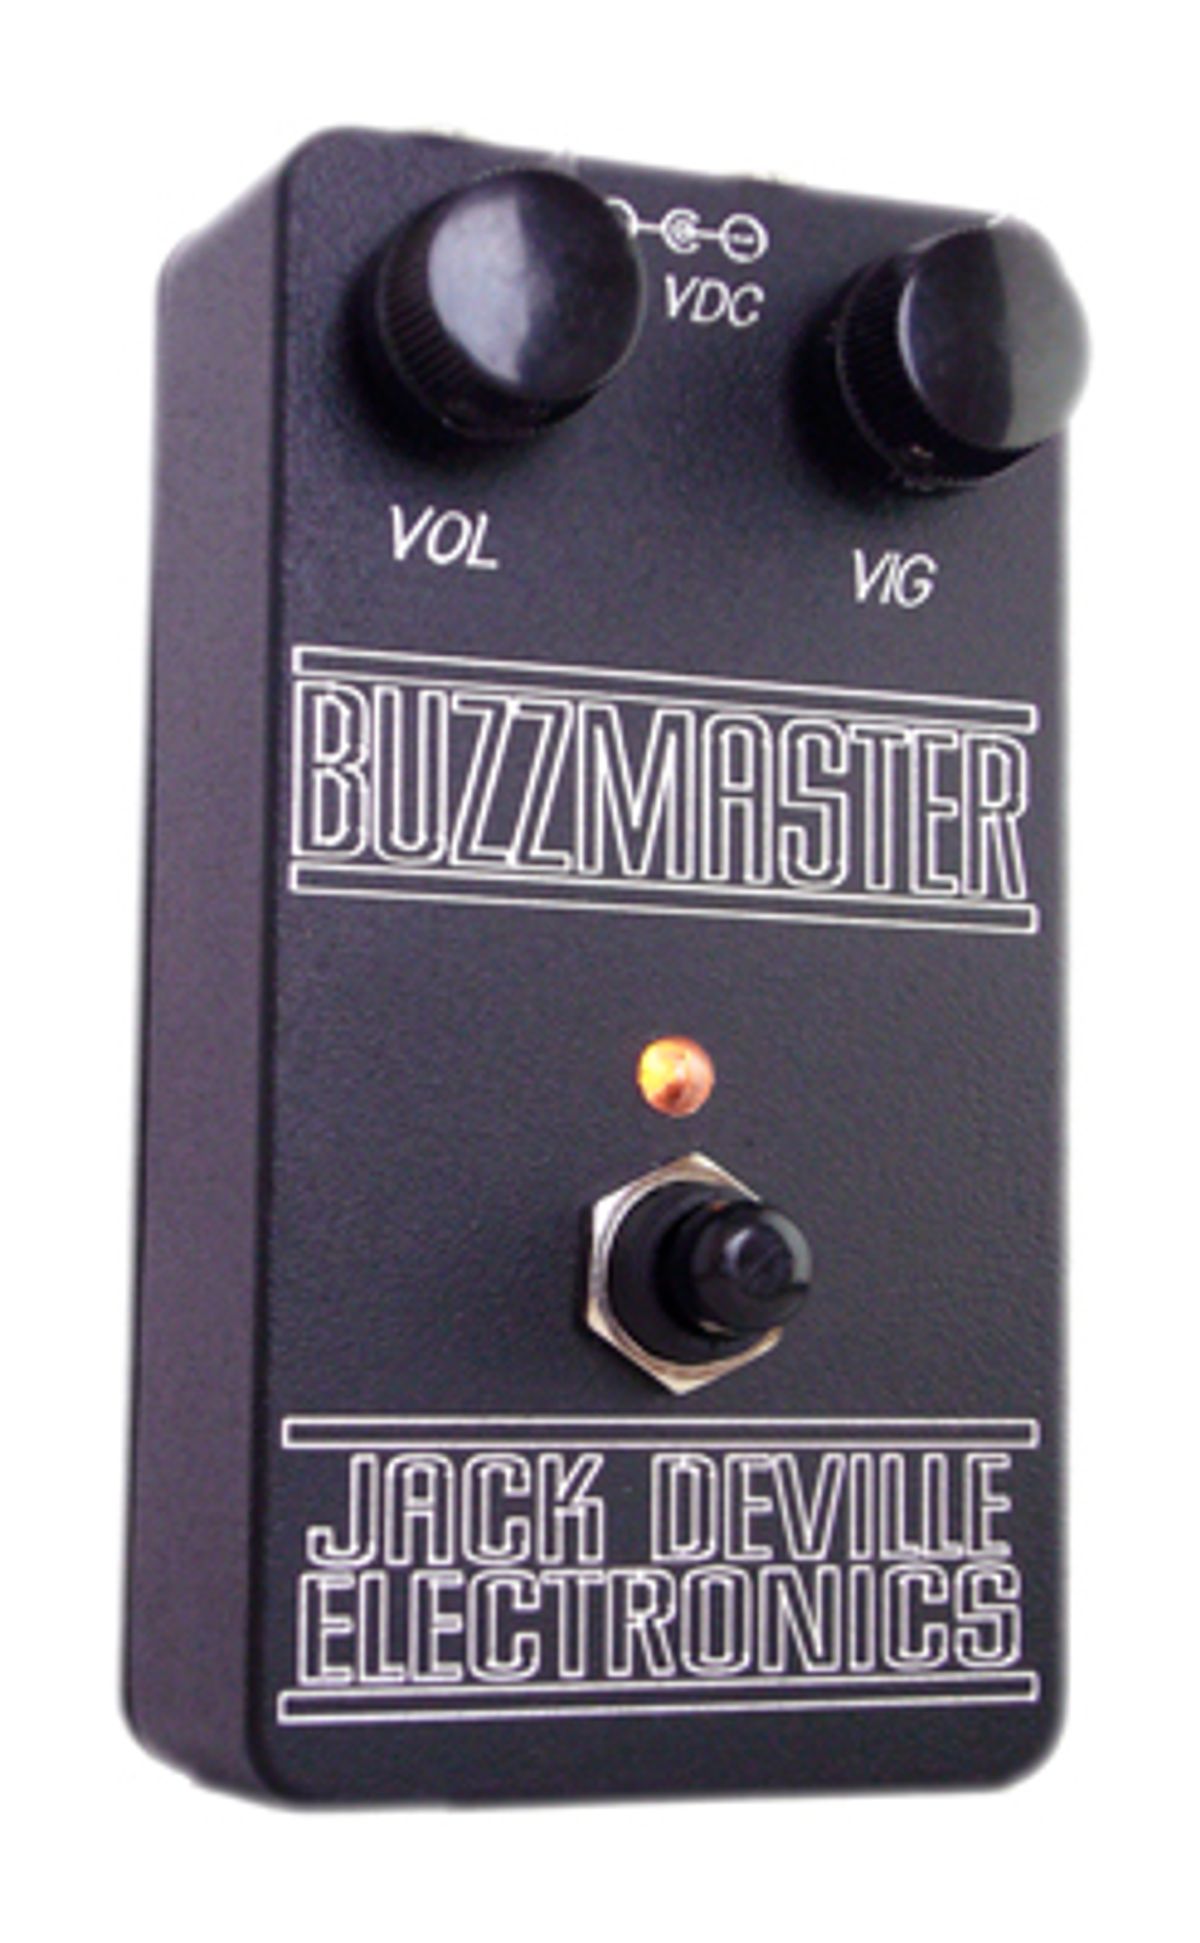 Jack Deville Announces Buzzmaster Fuzz Pedal